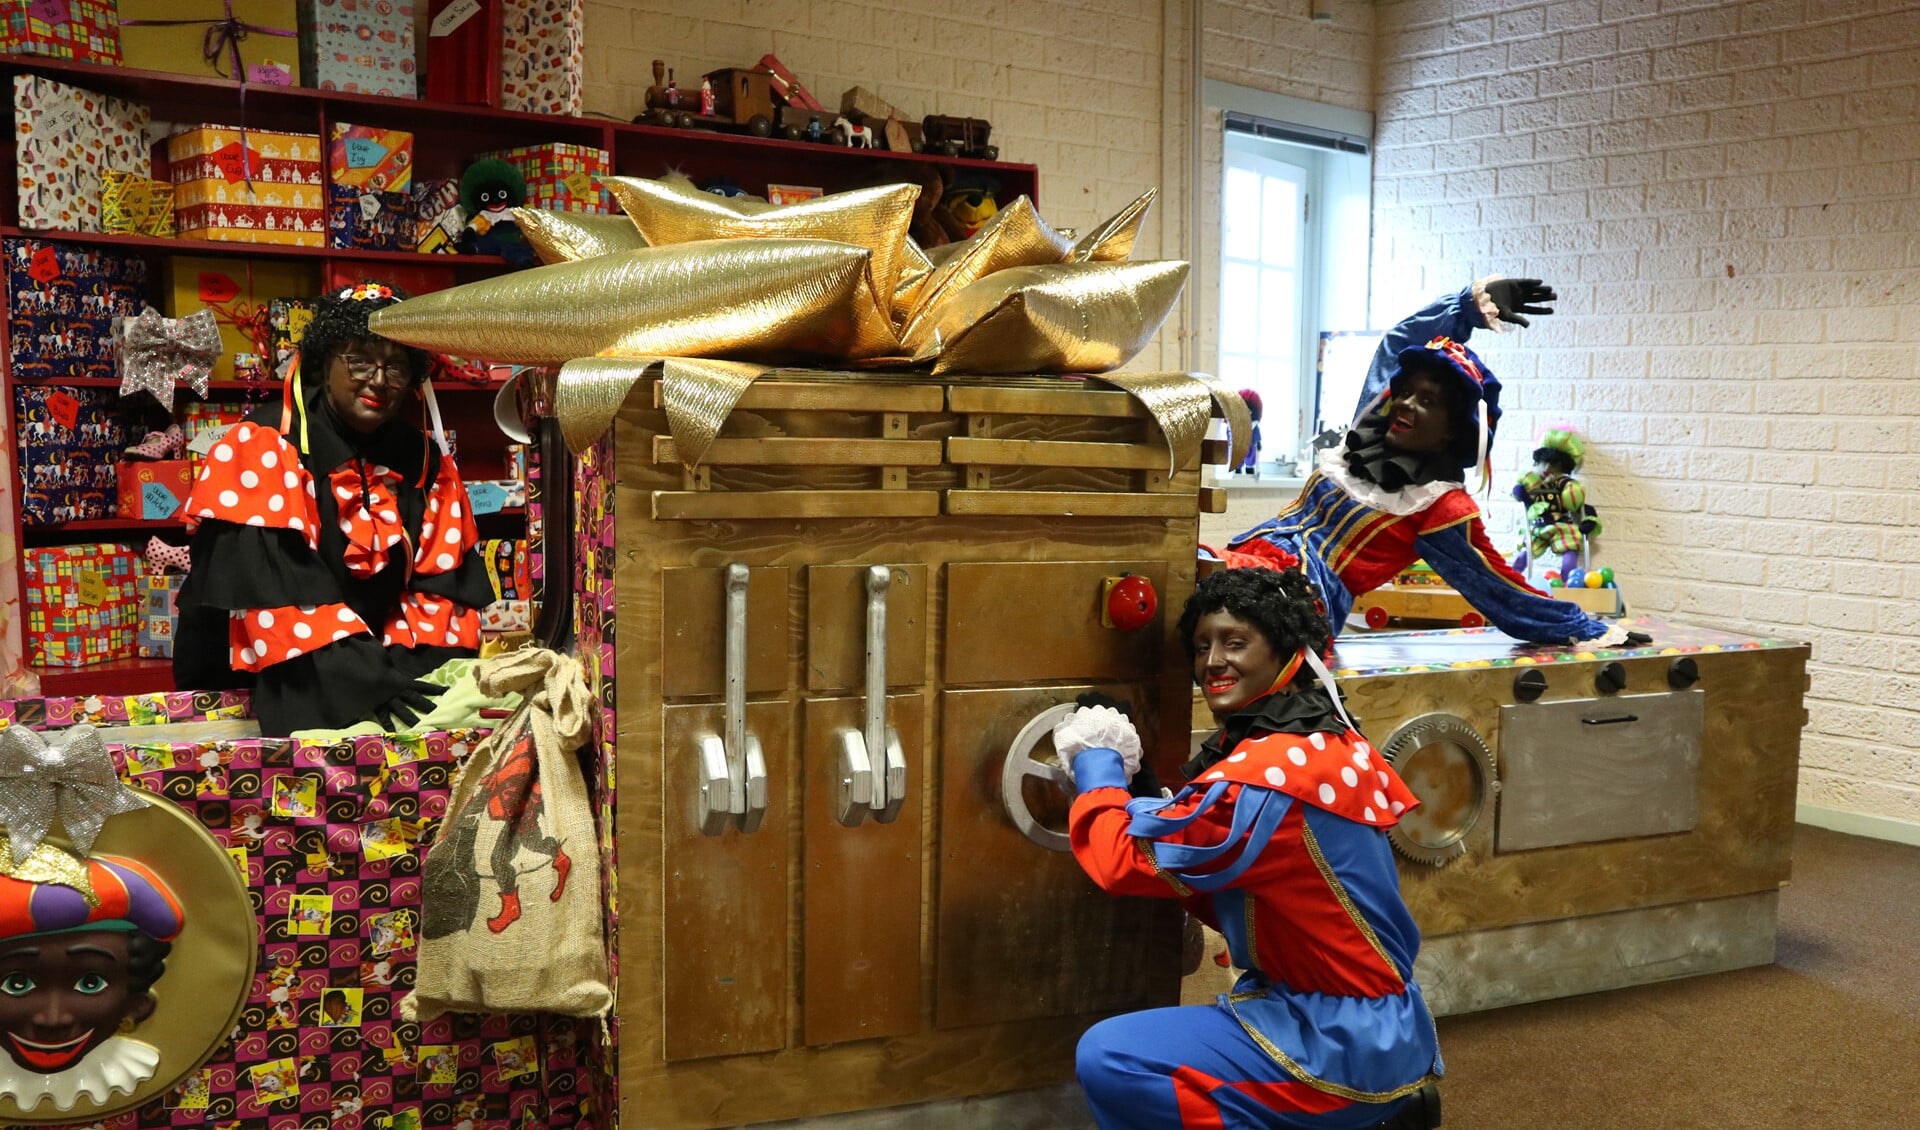 De Pieten maken er weer een vrolijke boel van in het Brielse Sinterklaashuis!